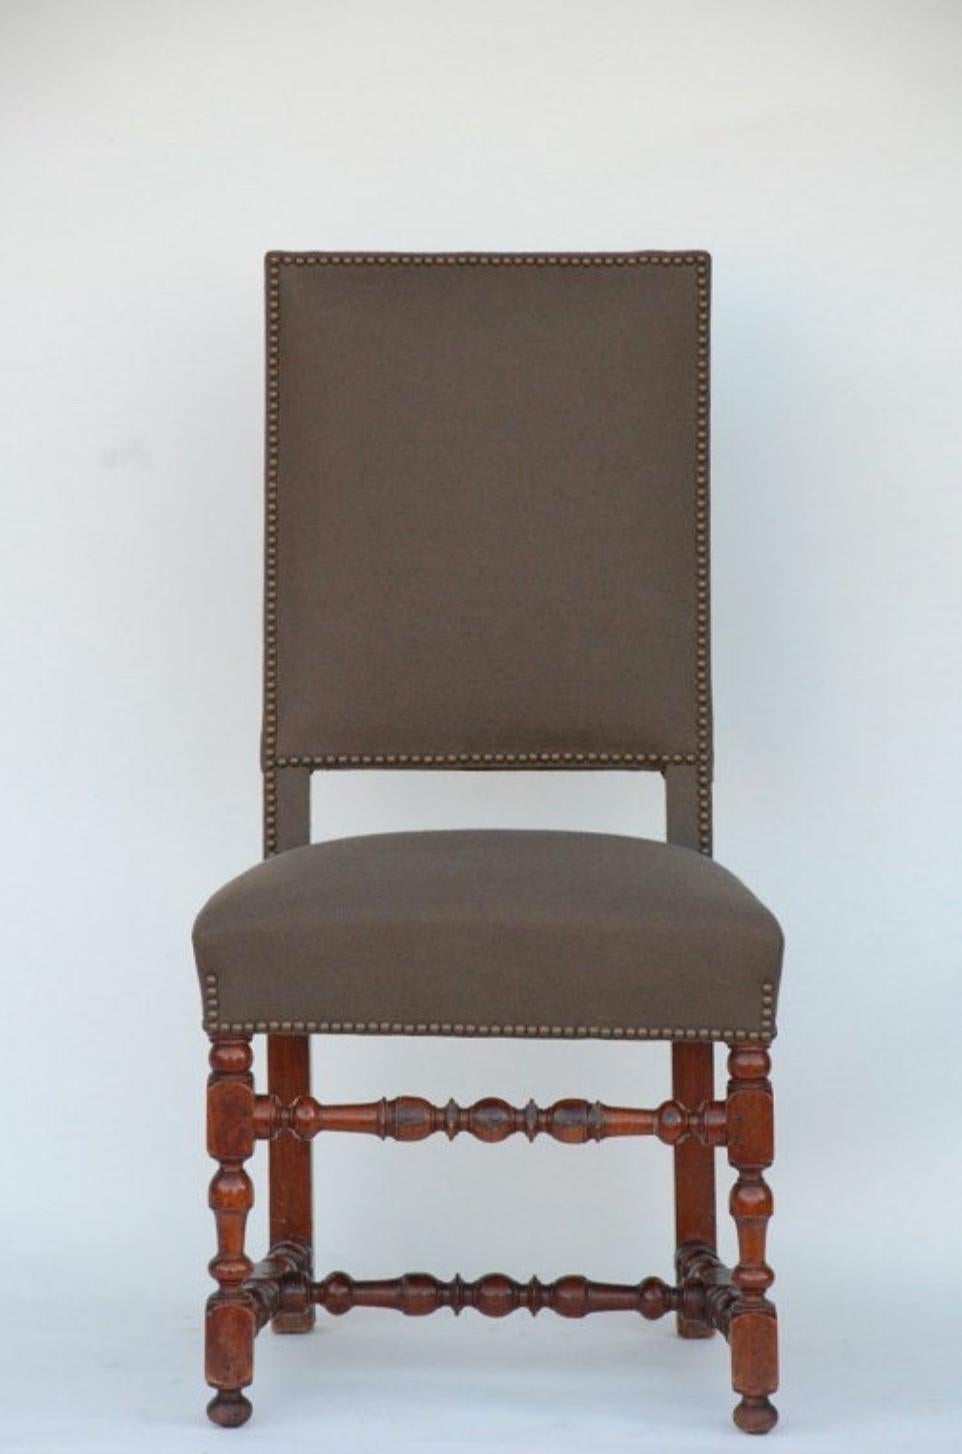 Paire de chaises d'appoint classiques en bois tourné de style Louis XIII. hauteur d'assise de 20 pouces. Entièrement restaurée et retapissée